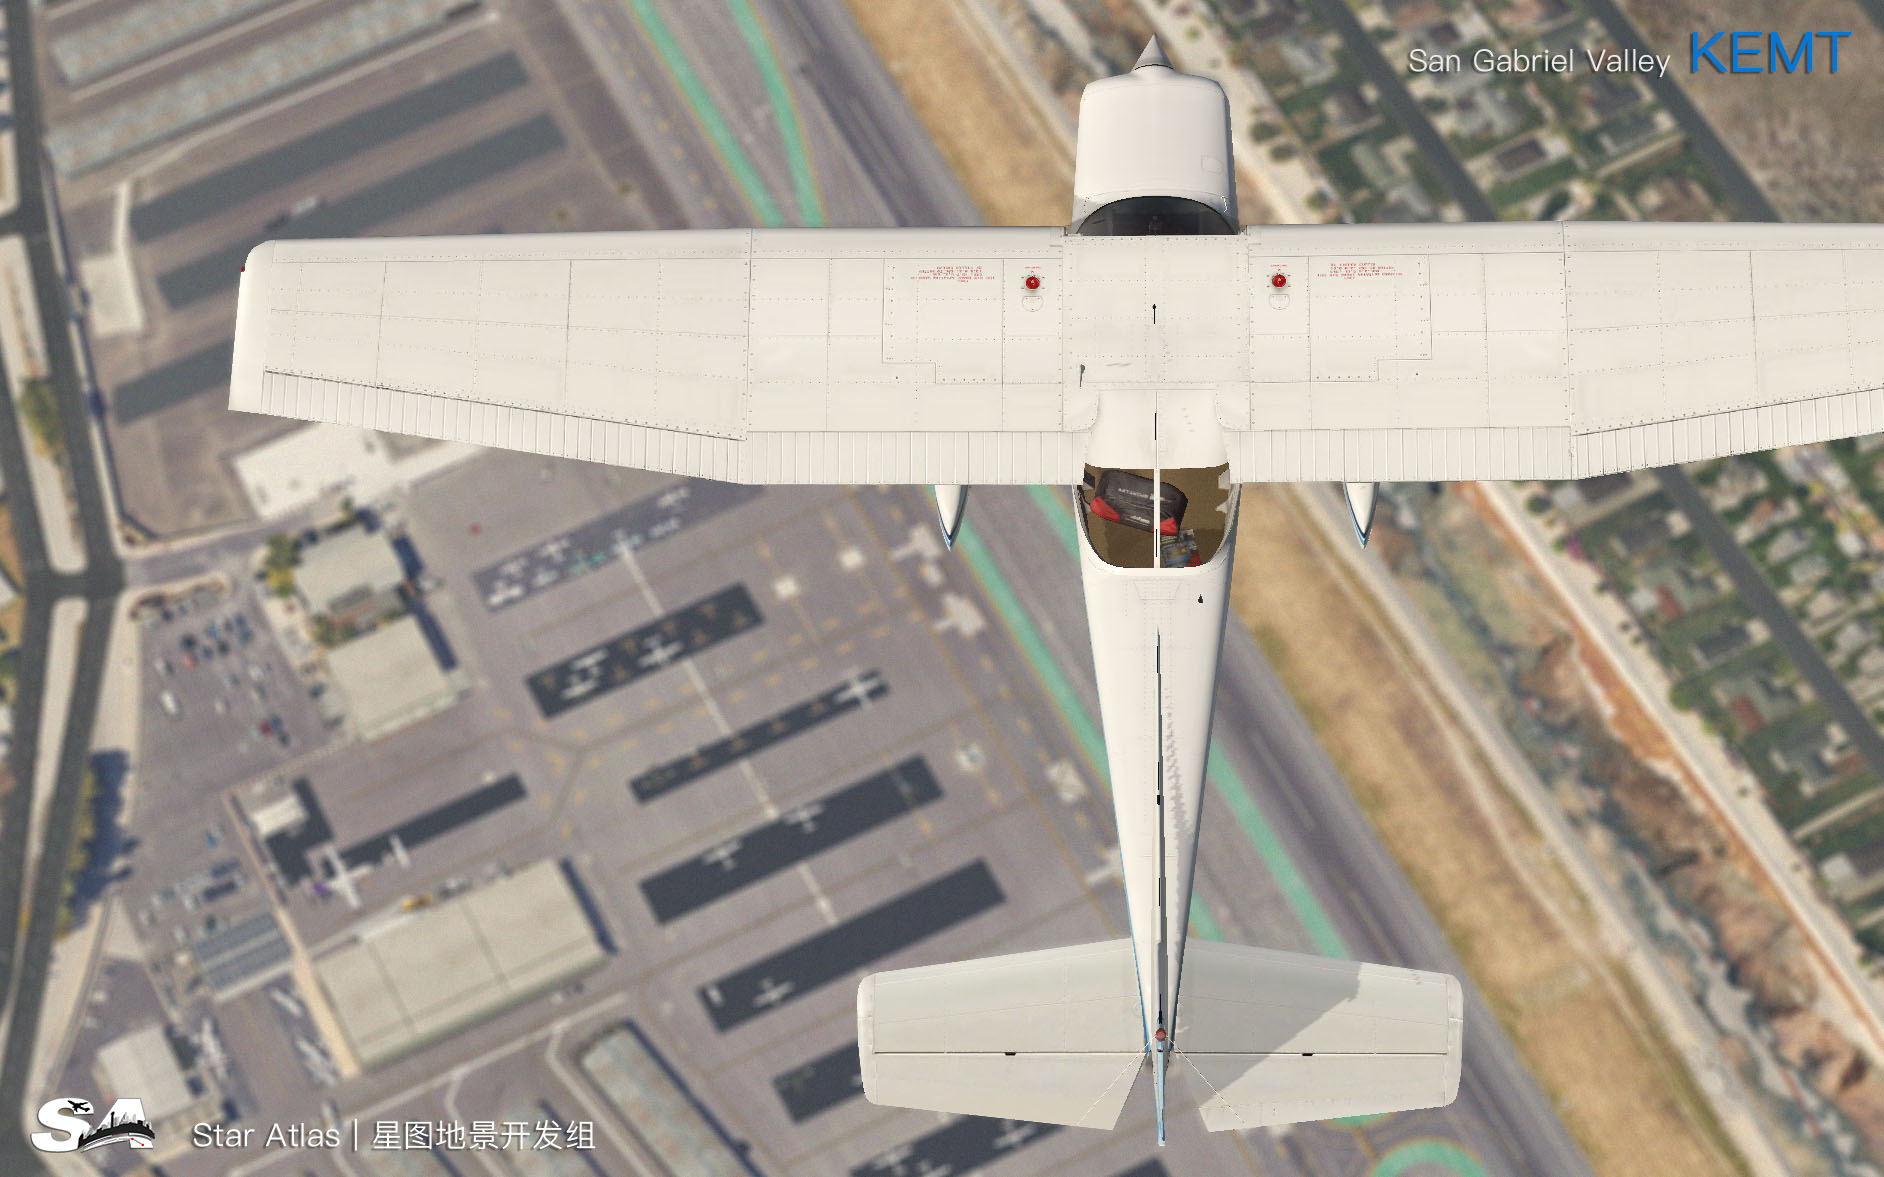 【X-Plane】KEMT-圣盖博谷机场 HD 1.0-2322 